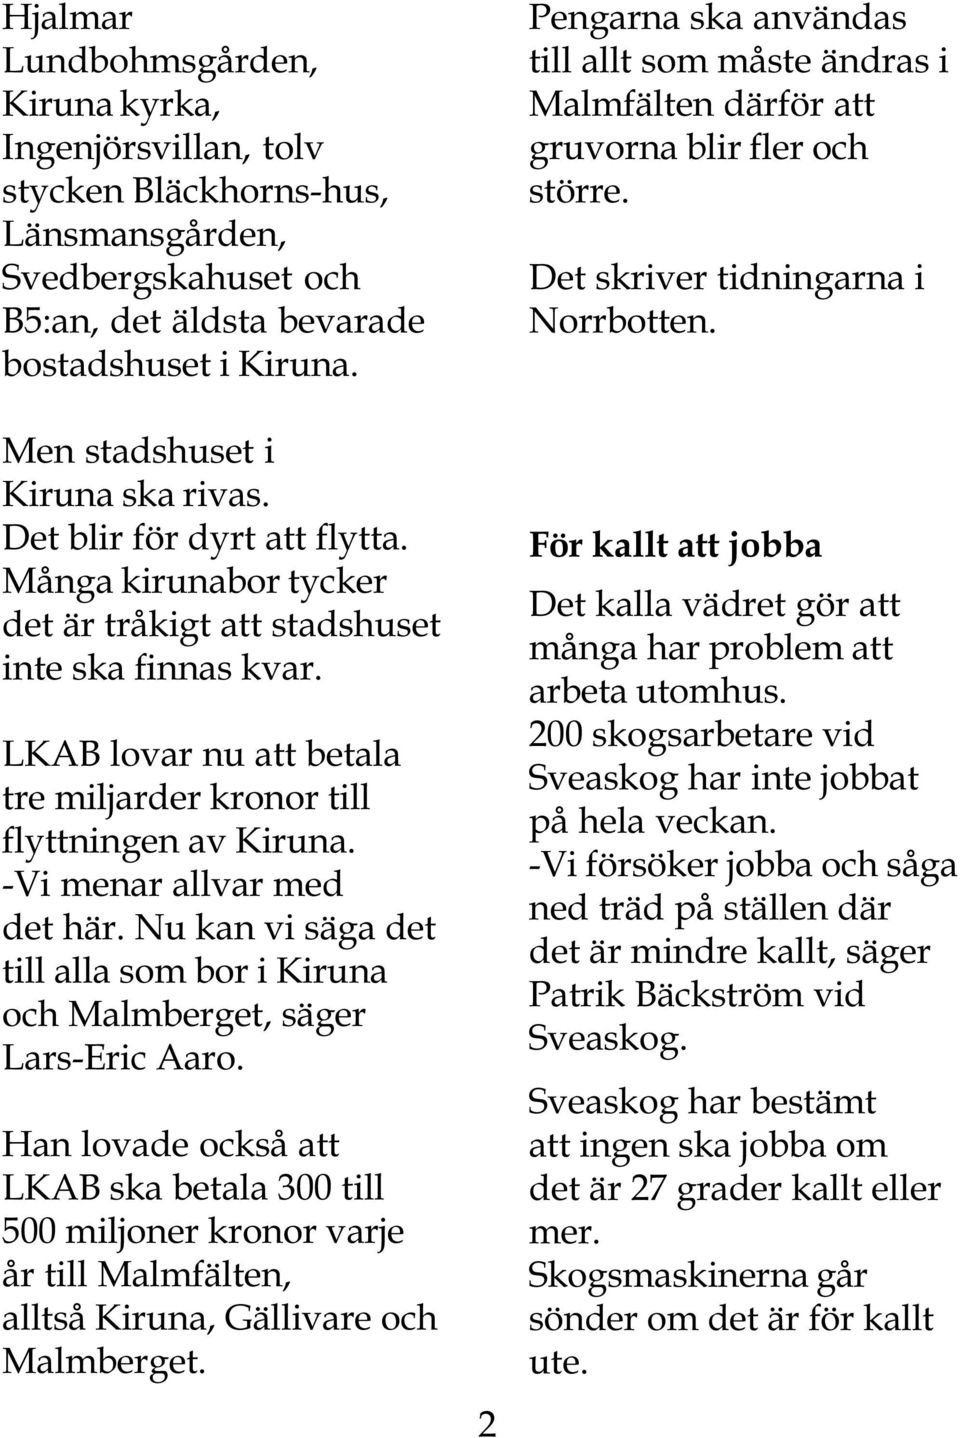 LKAB lovar nu att betala tre miljarder kronor till flyttningen av Kiruna. -Vi menar allvar med det här. Nu kan vi säga det till alla som bor i Kiruna och Malmberget, säger Lars-Eric Aaro.